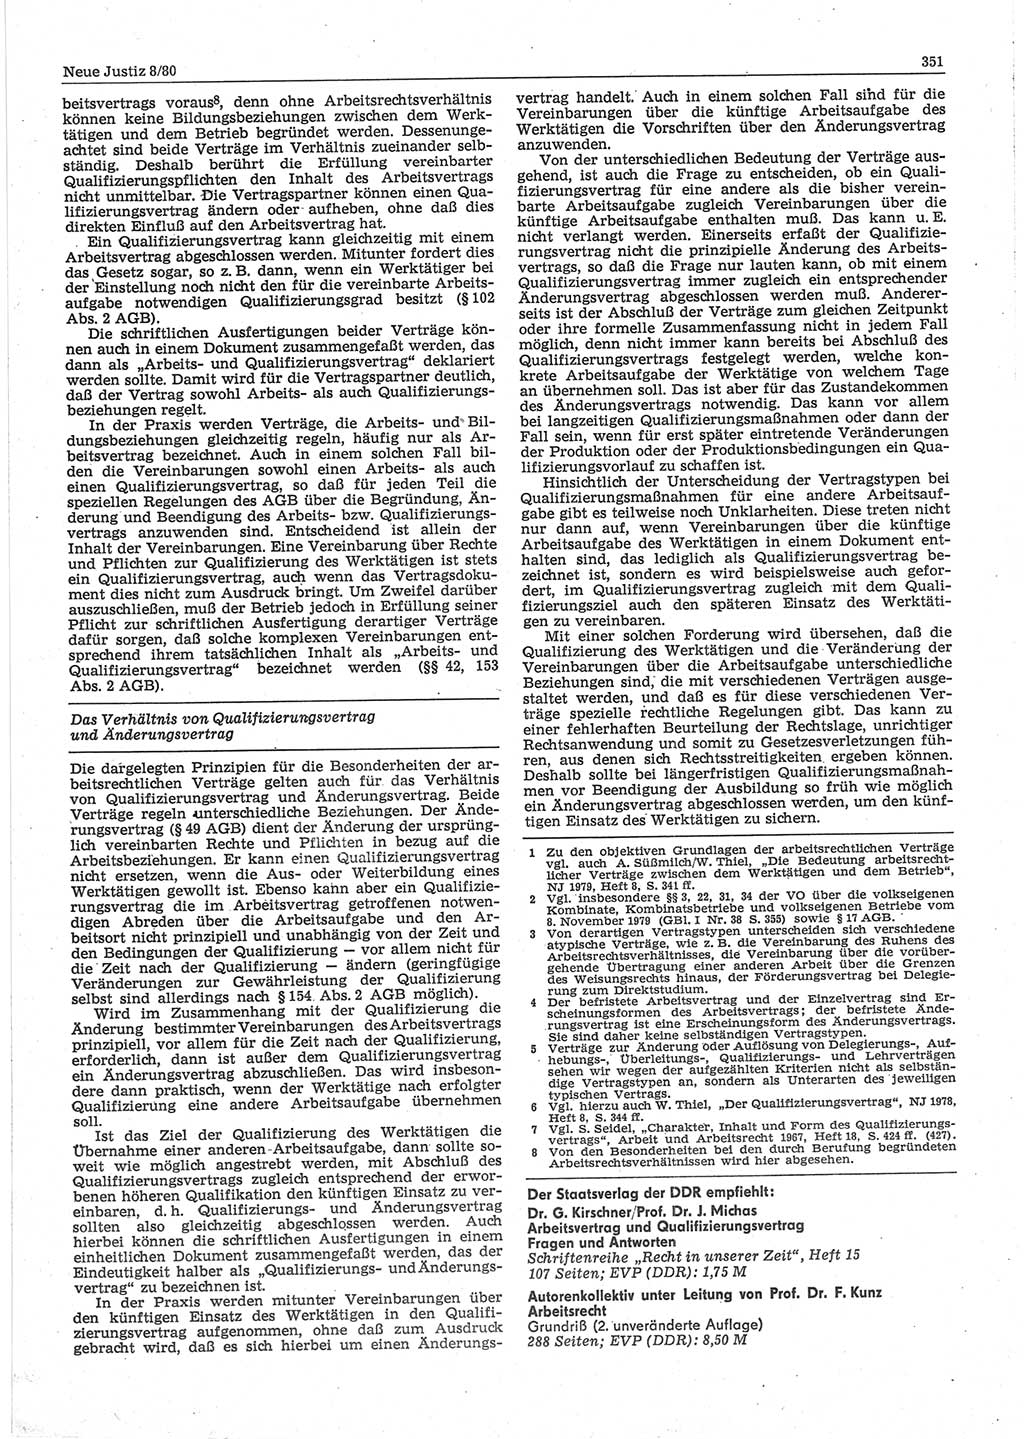 Neue Justiz (NJ), Zeitschrift für sozialistisches Recht und Gesetzlichkeit [Deutsche Demokratische Republik (DDR)], 34. Jahrgang 1980, Seite 351 (NJ DDR 1980, S. 351)